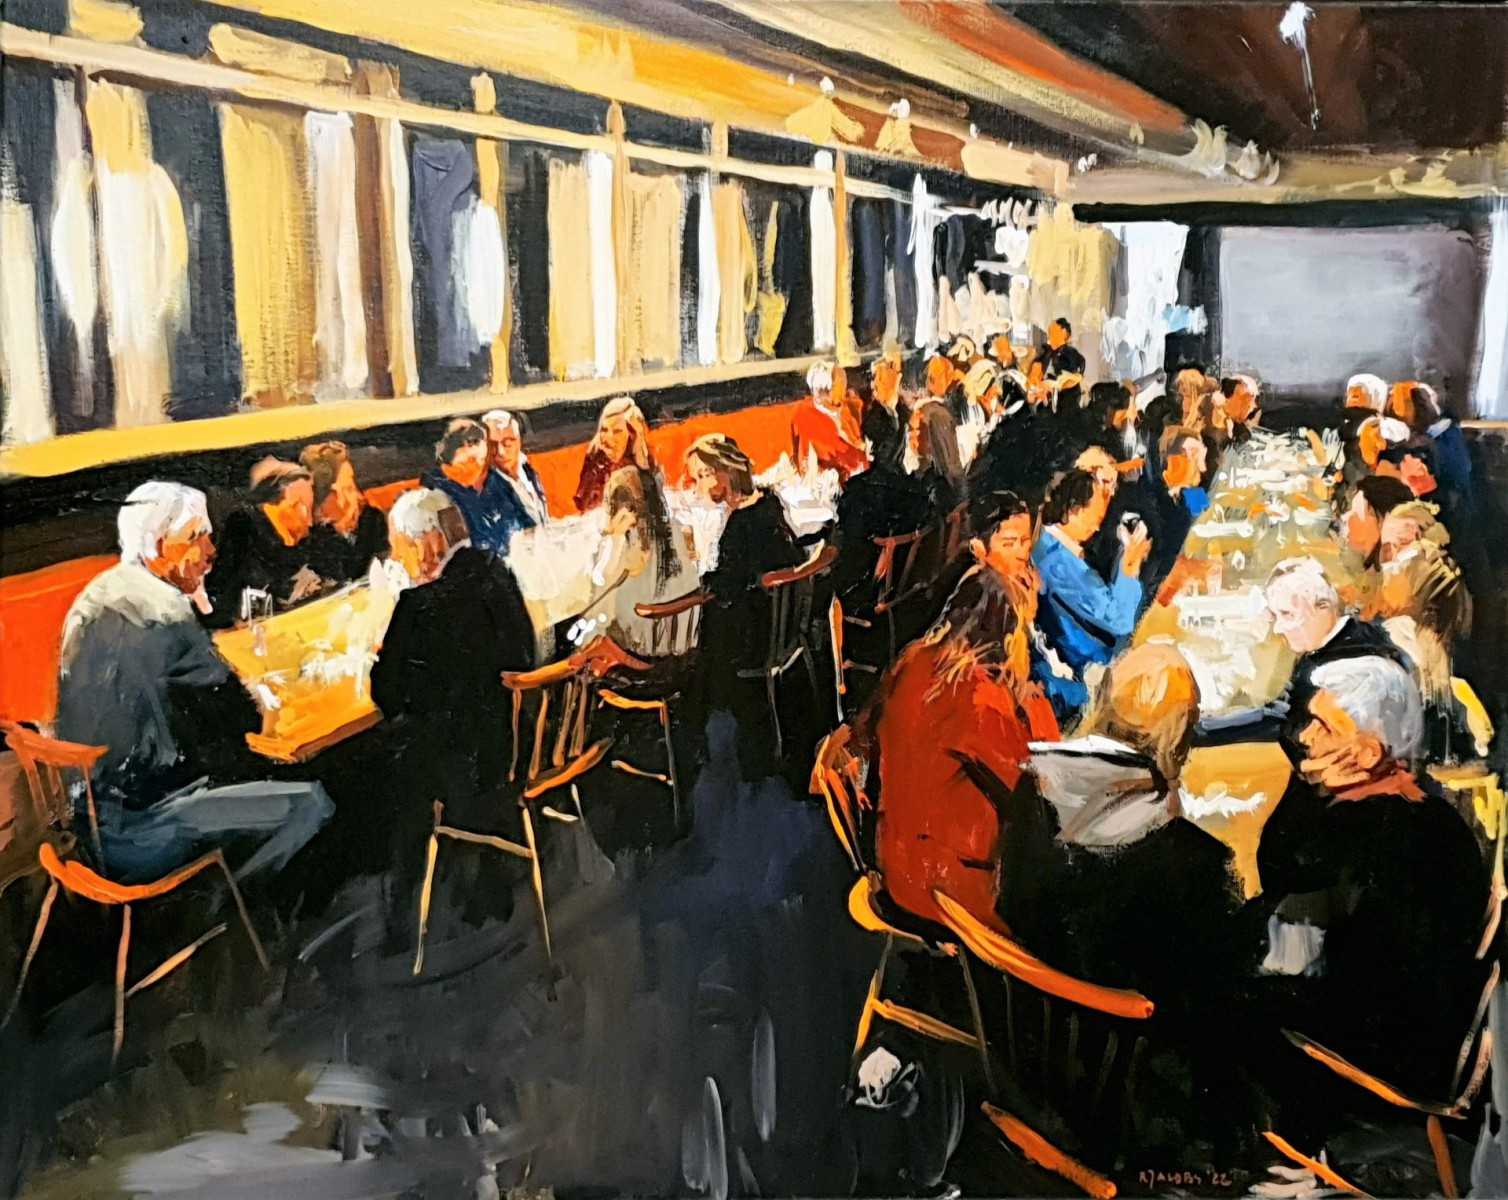 Ervaar een culinaire ervaring tijdens het diner in Amsterdam, Noord-Holland, terwijl Rob Jacobs zijn schilderkunsten toont op een doek van 80x100cm.